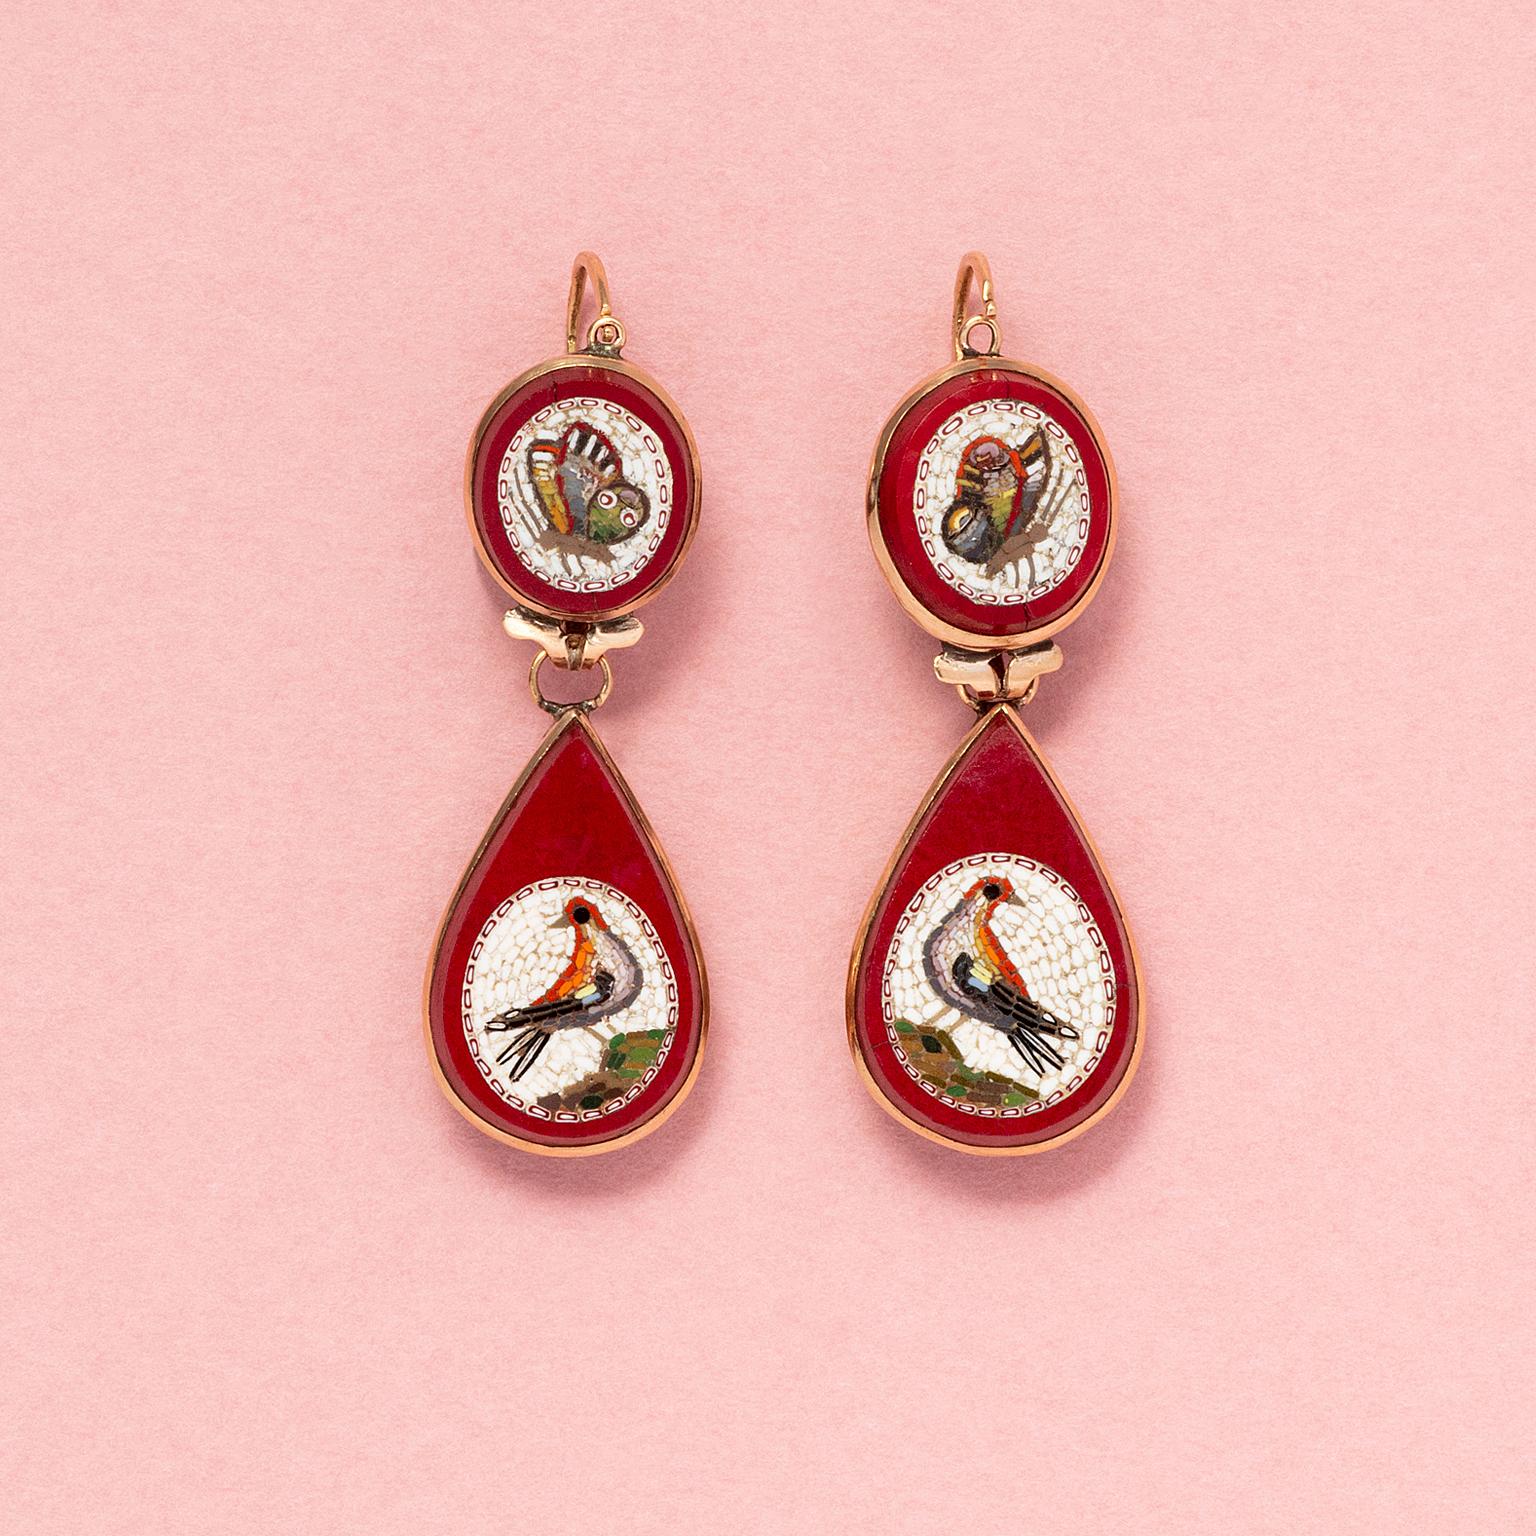 Ein Paar Ohrringe aus 18 Karat Roségold und Mikromosaik, jeweils mit einer runden Plakette mit einem Schmetterling auf weißem Grund, gefasst in rotem Purpurglas - das Obsidian imitiert - mit einer tropfenförmigen roten Purpurinplakette mit einem